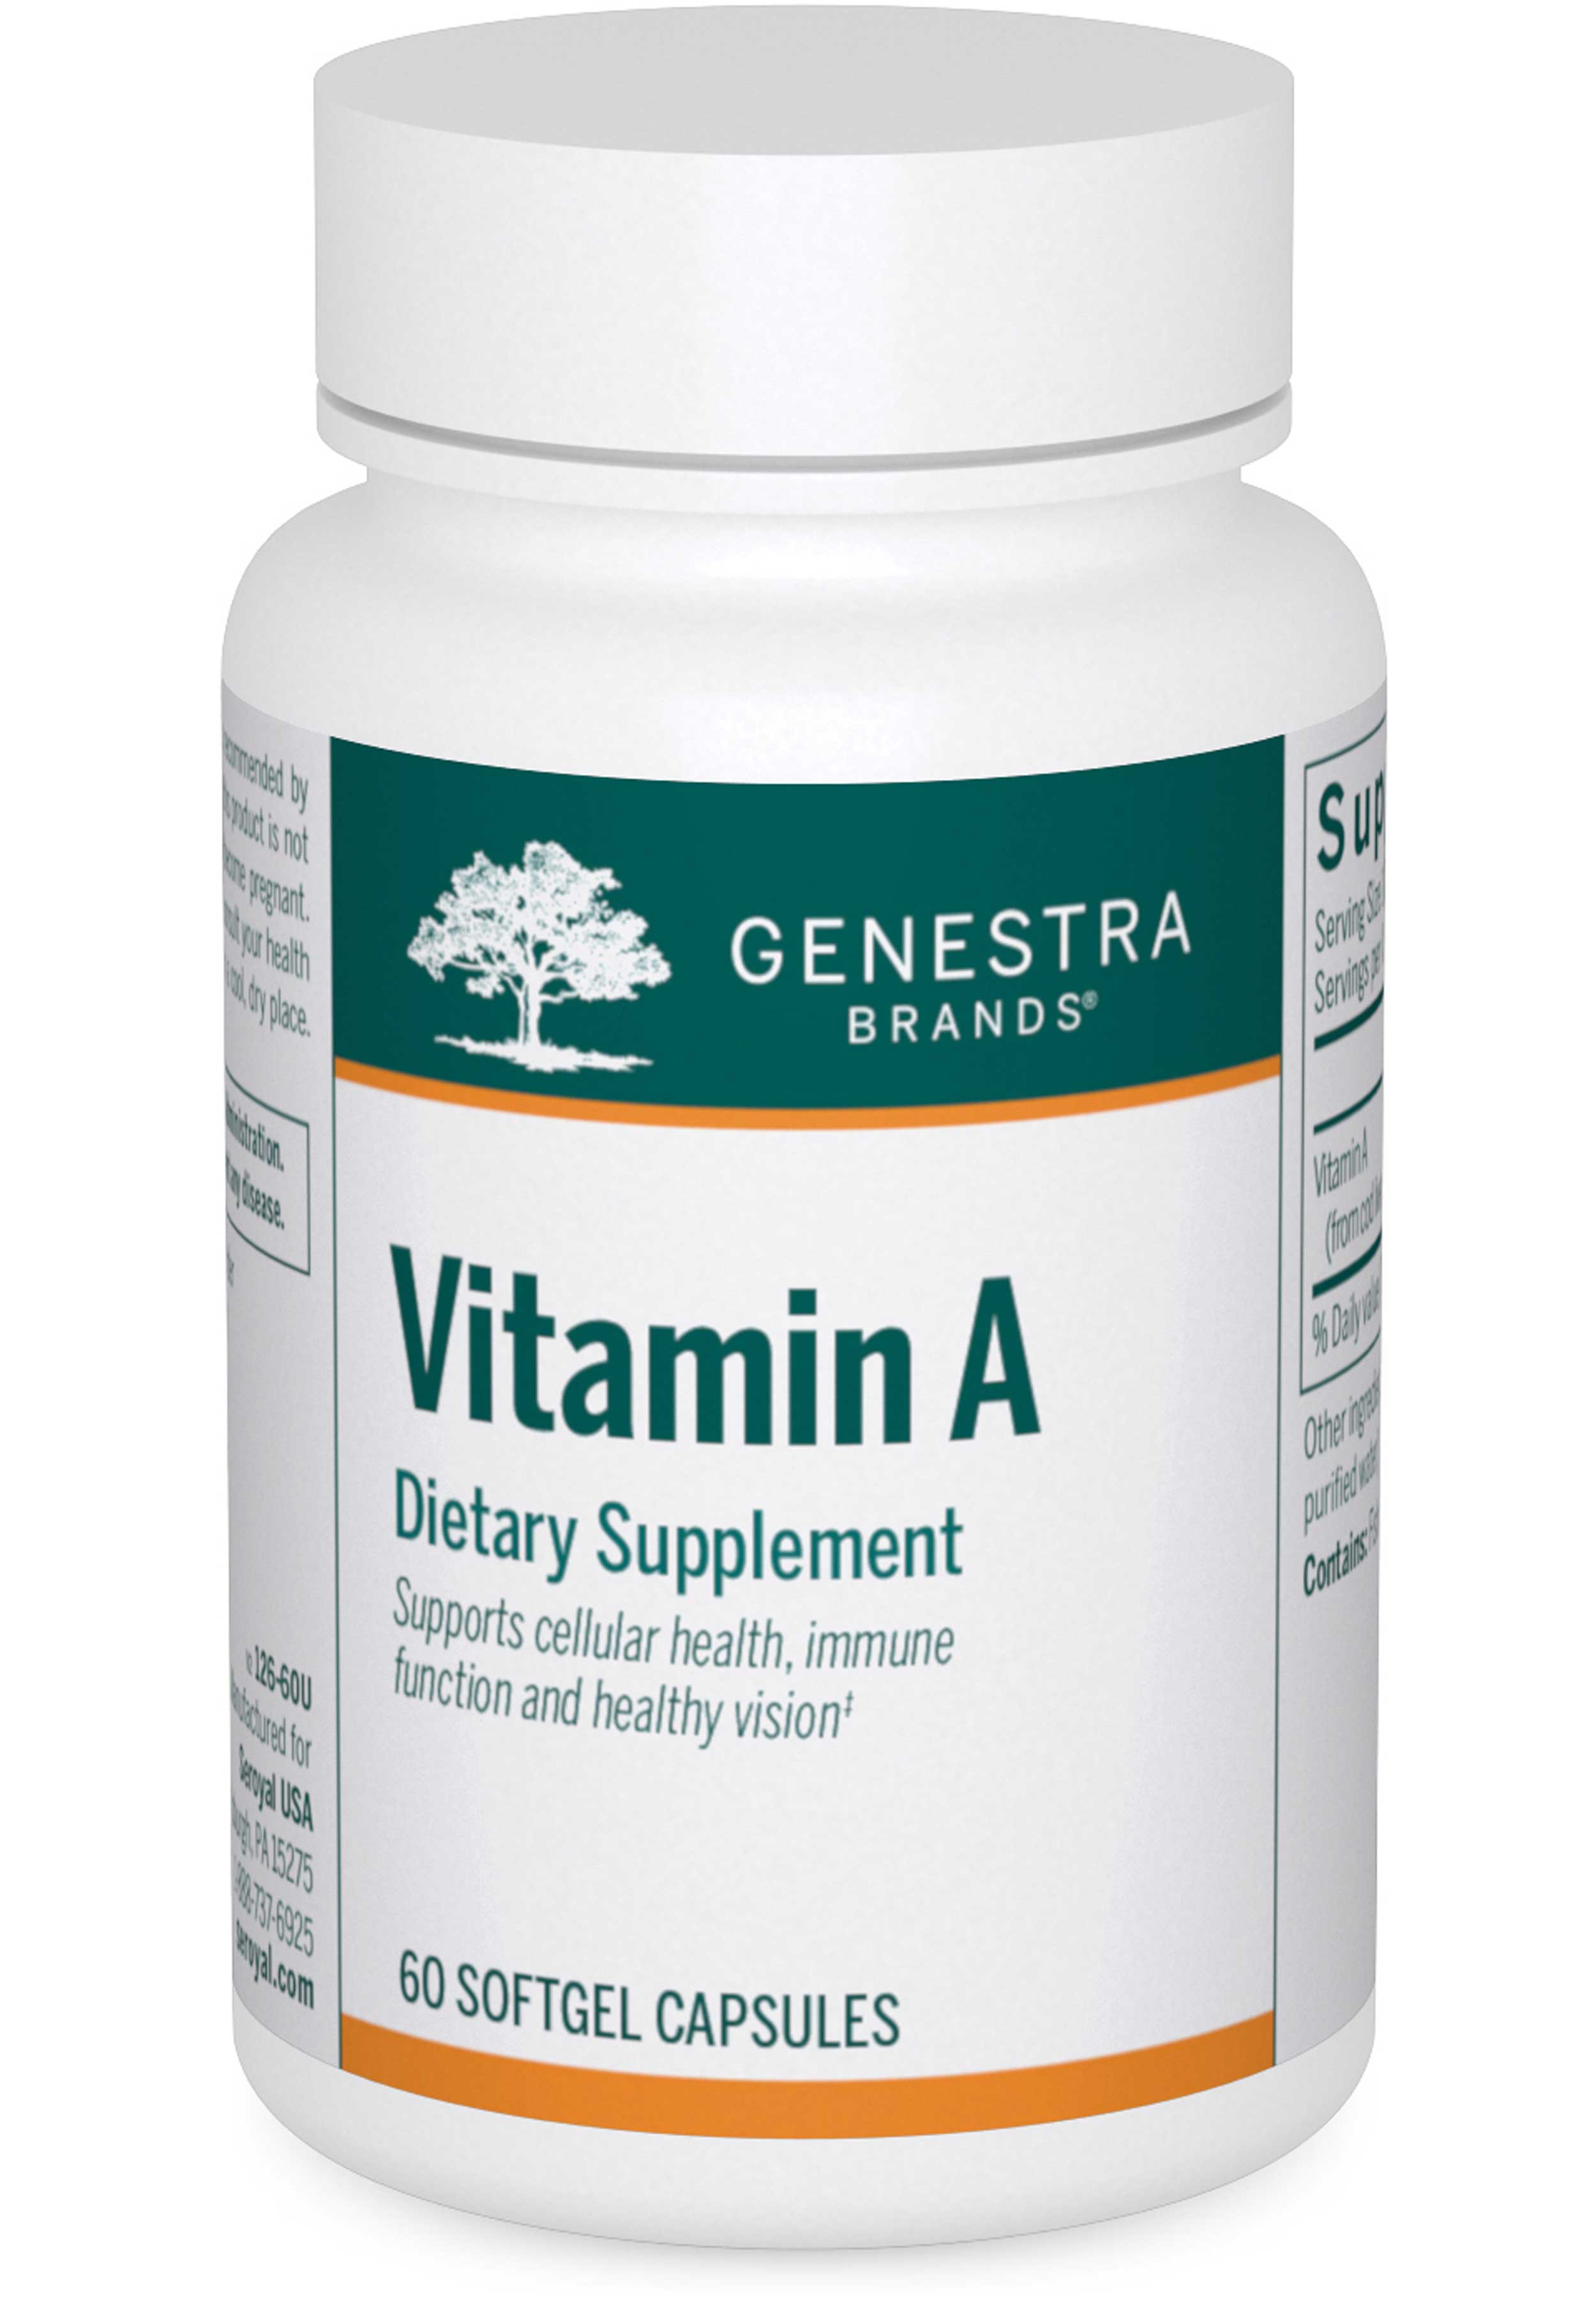 Genestra Brands Vitamin A